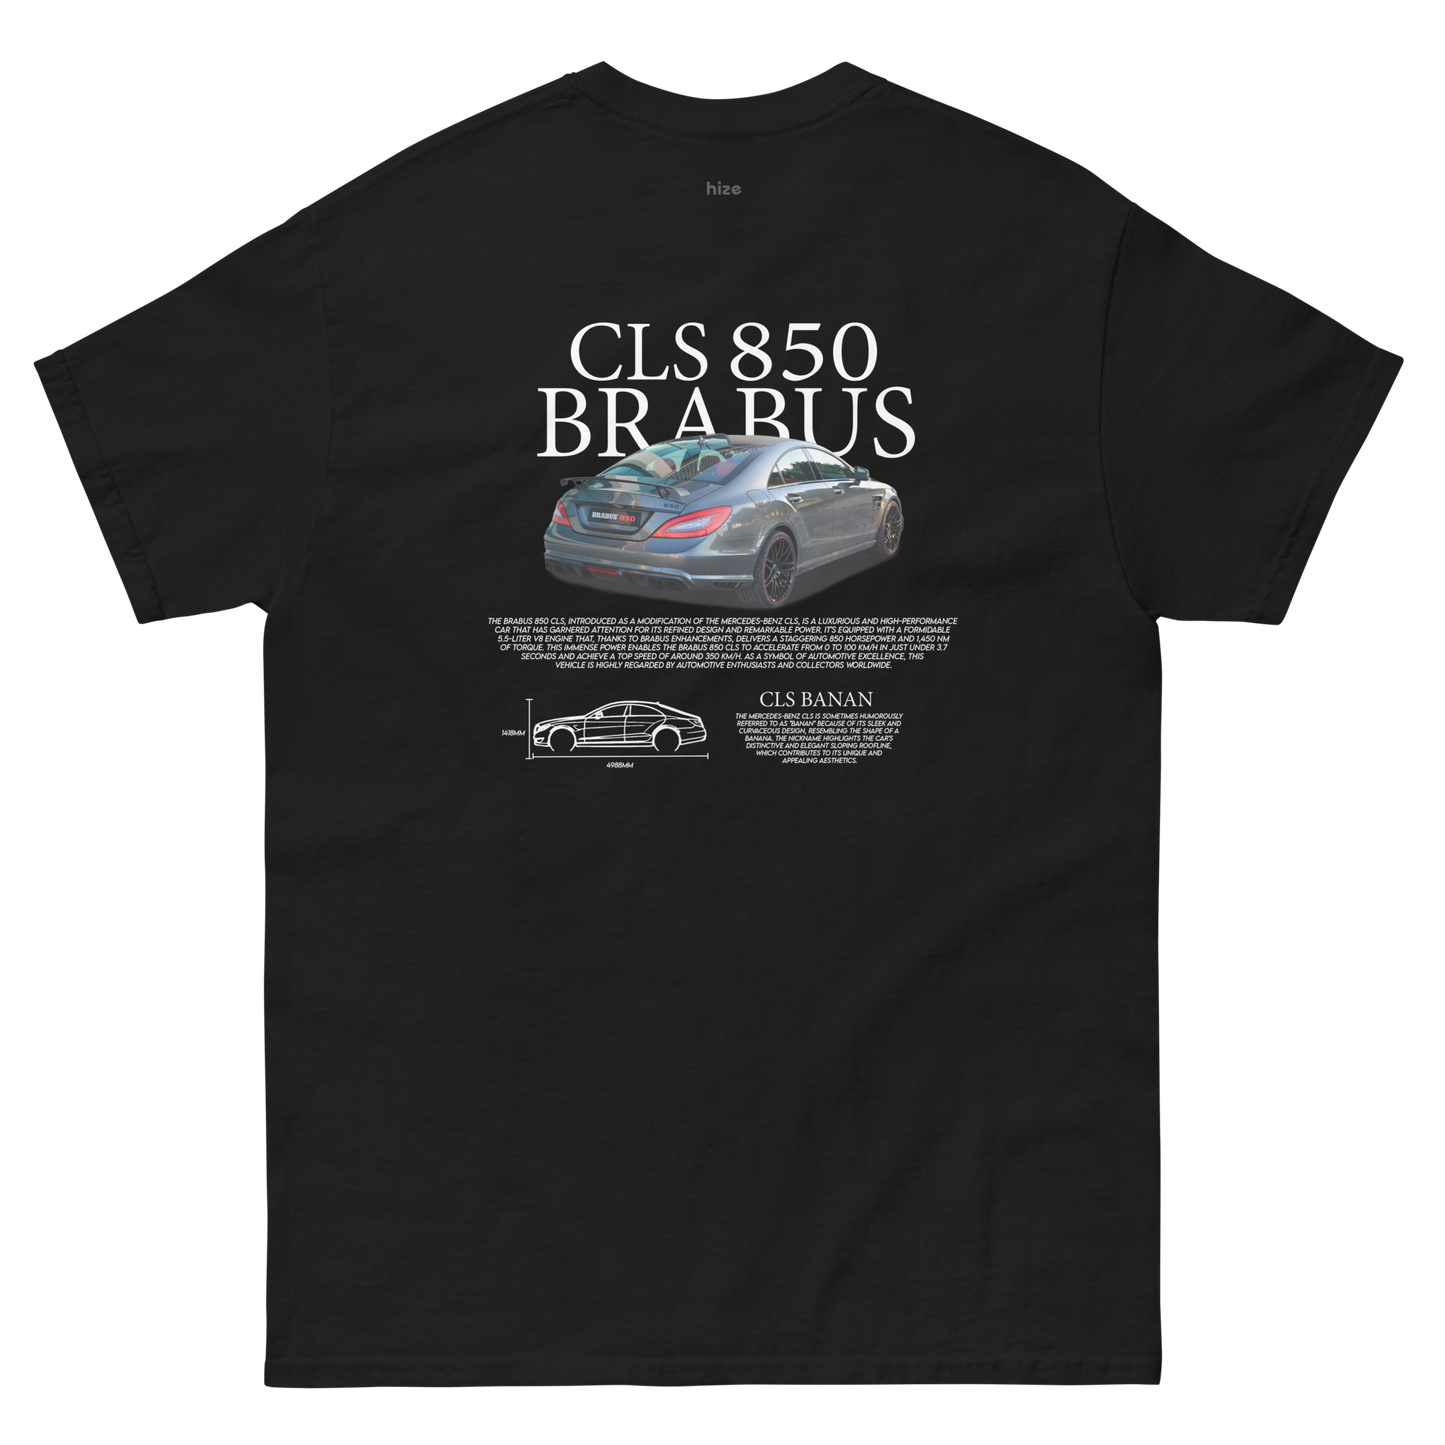 Brabus CLS 850 T-shirt